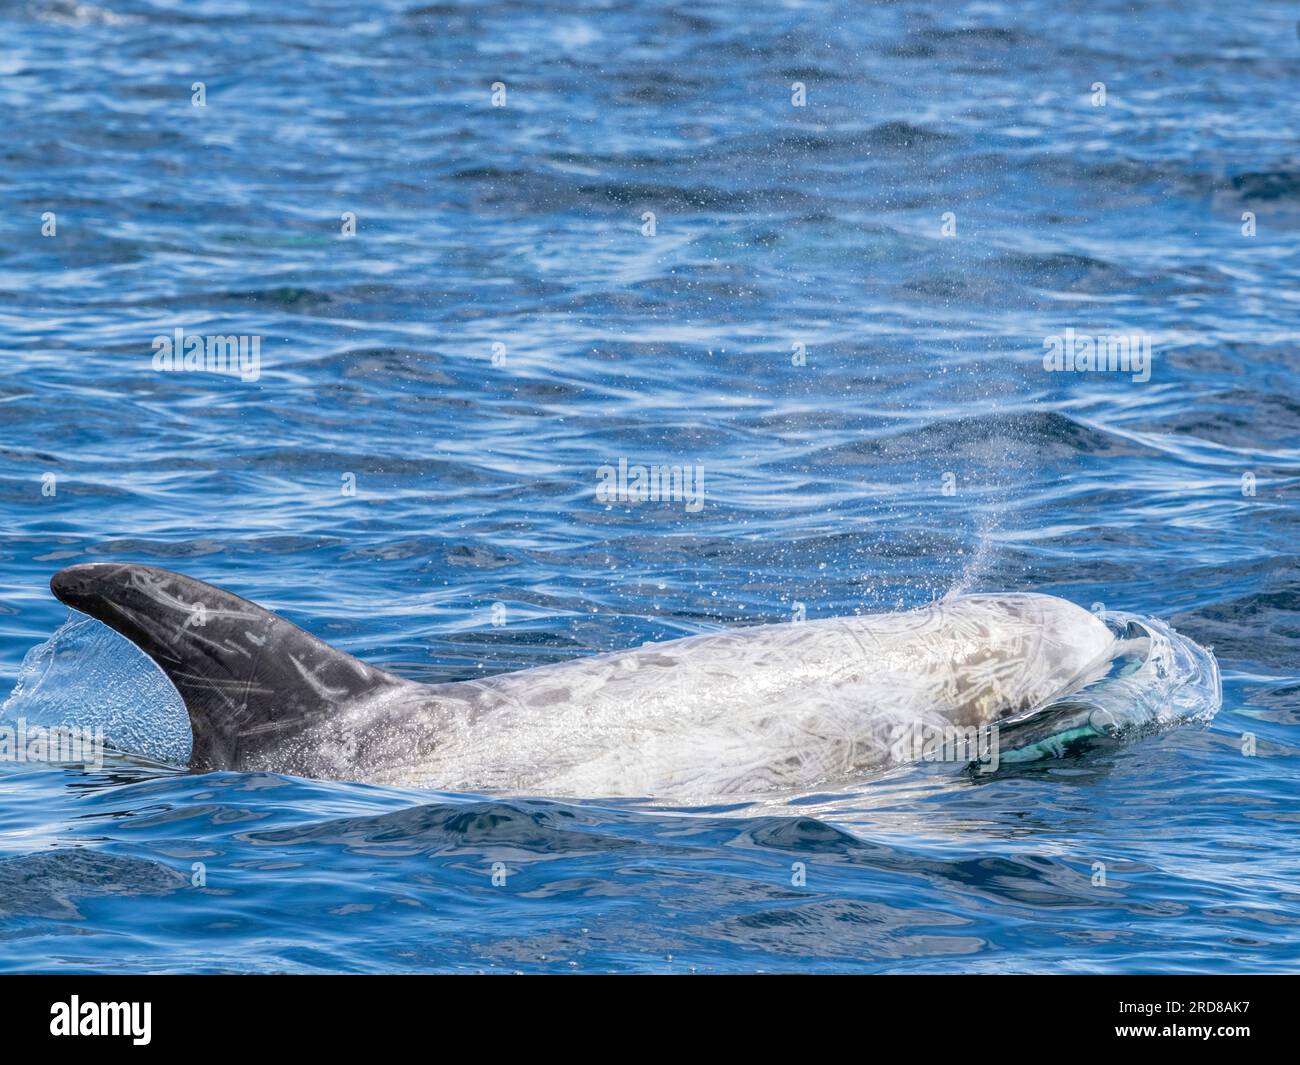 Dauphins adultes de Risso (Grampus griseus), faisant surface près de la côte dans le sanctuaire marin de Monterey Bay, Californie, États-Unis d'Amérique, Amérique du Nord Banque D'Images